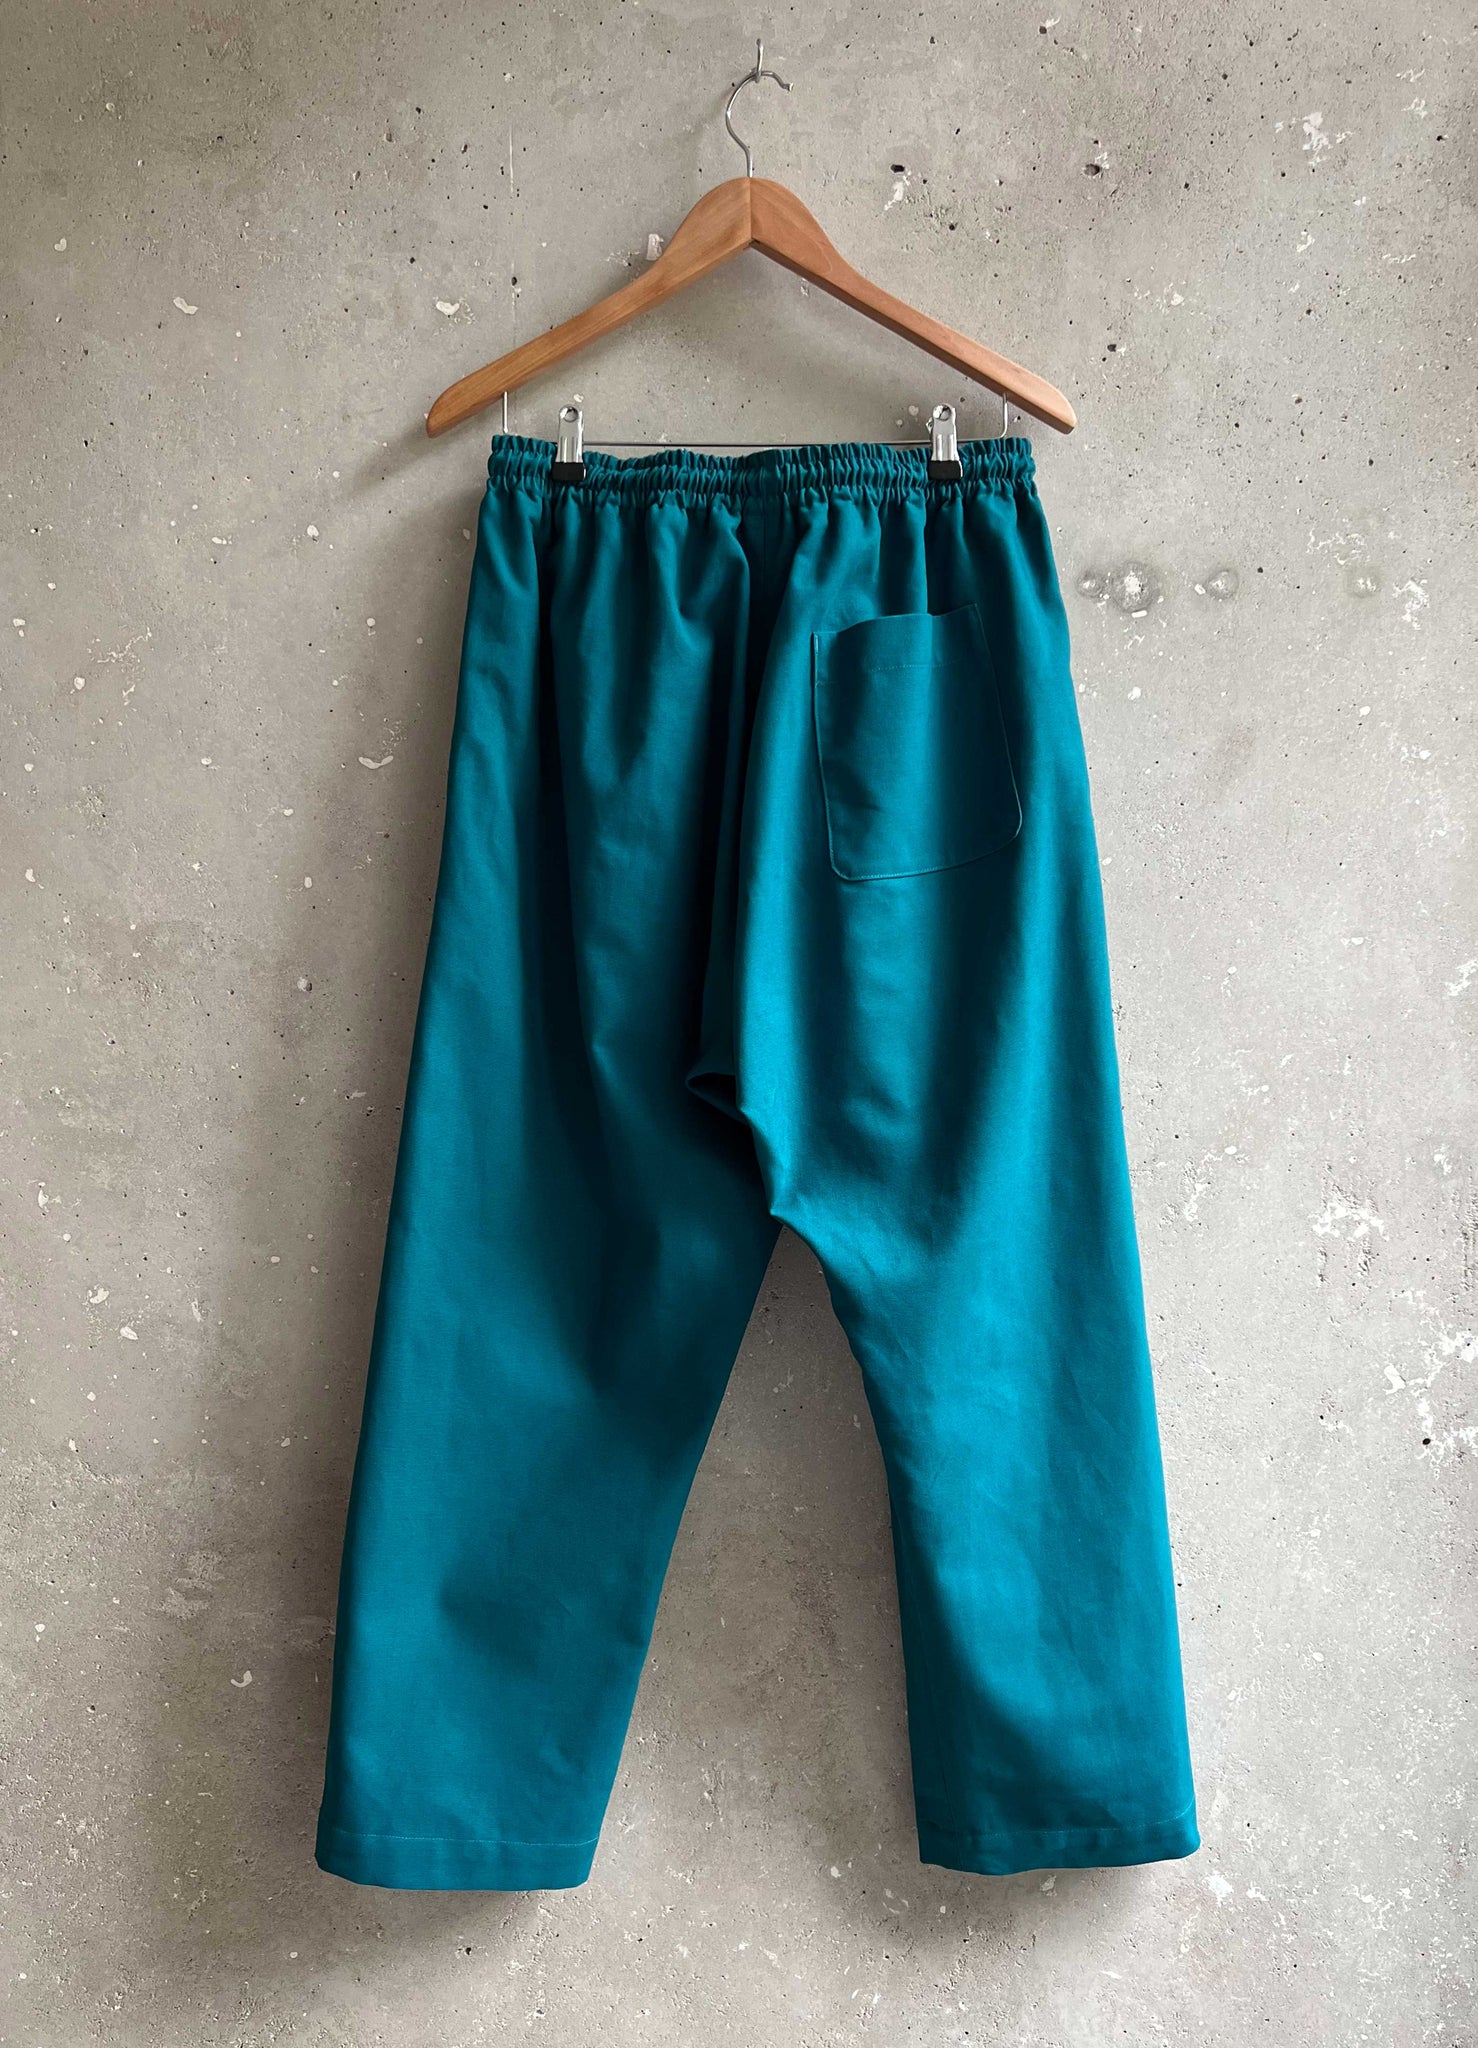 Soft Suit pants rich turquoise canvas